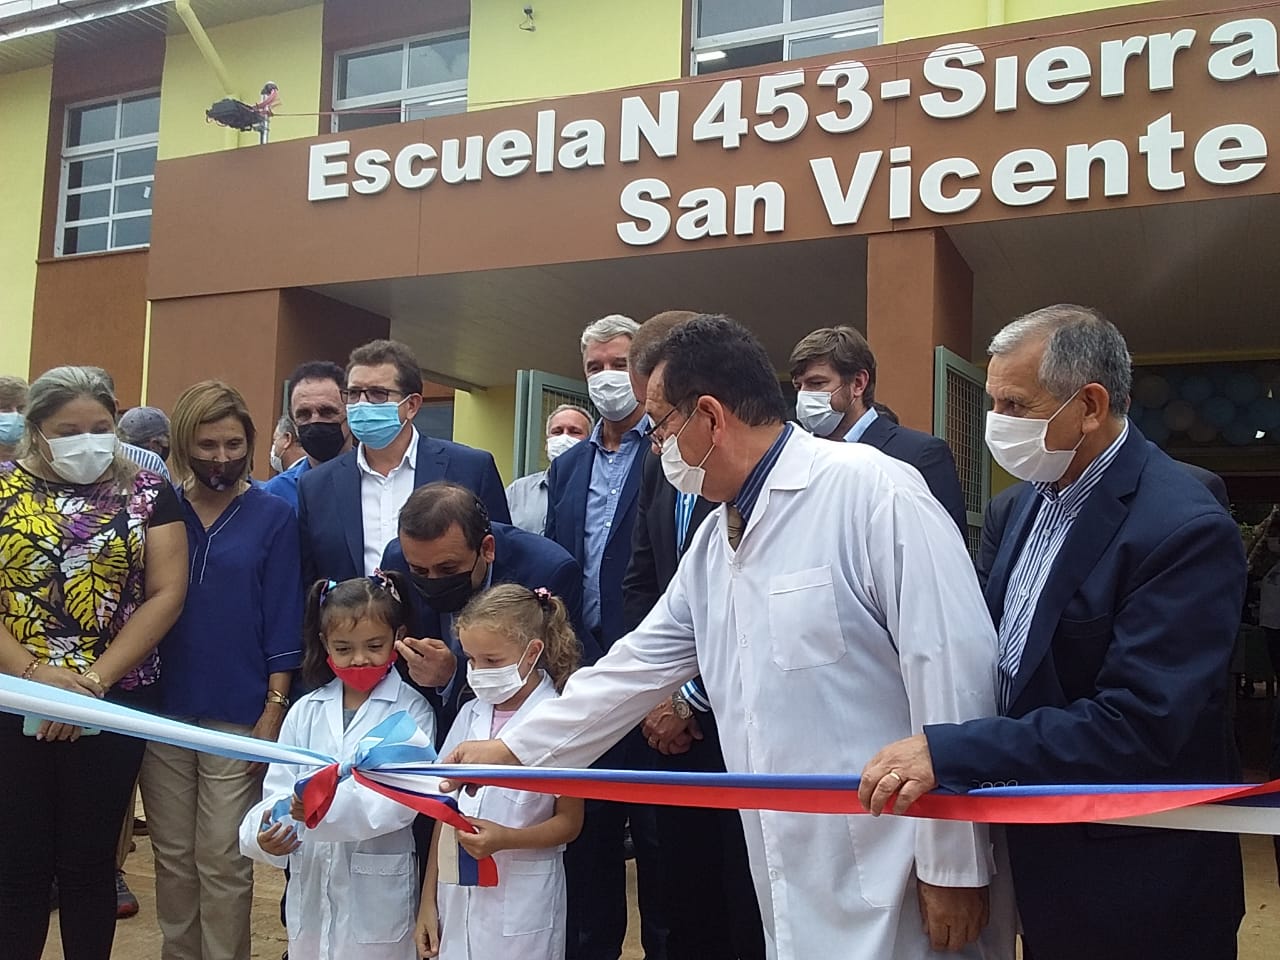 Oscar Herrera Ahuad inauguró una escuela en San Vicente: “Hoy vengo a decirles que la educación es el pilar fundamental de este Gobierno”